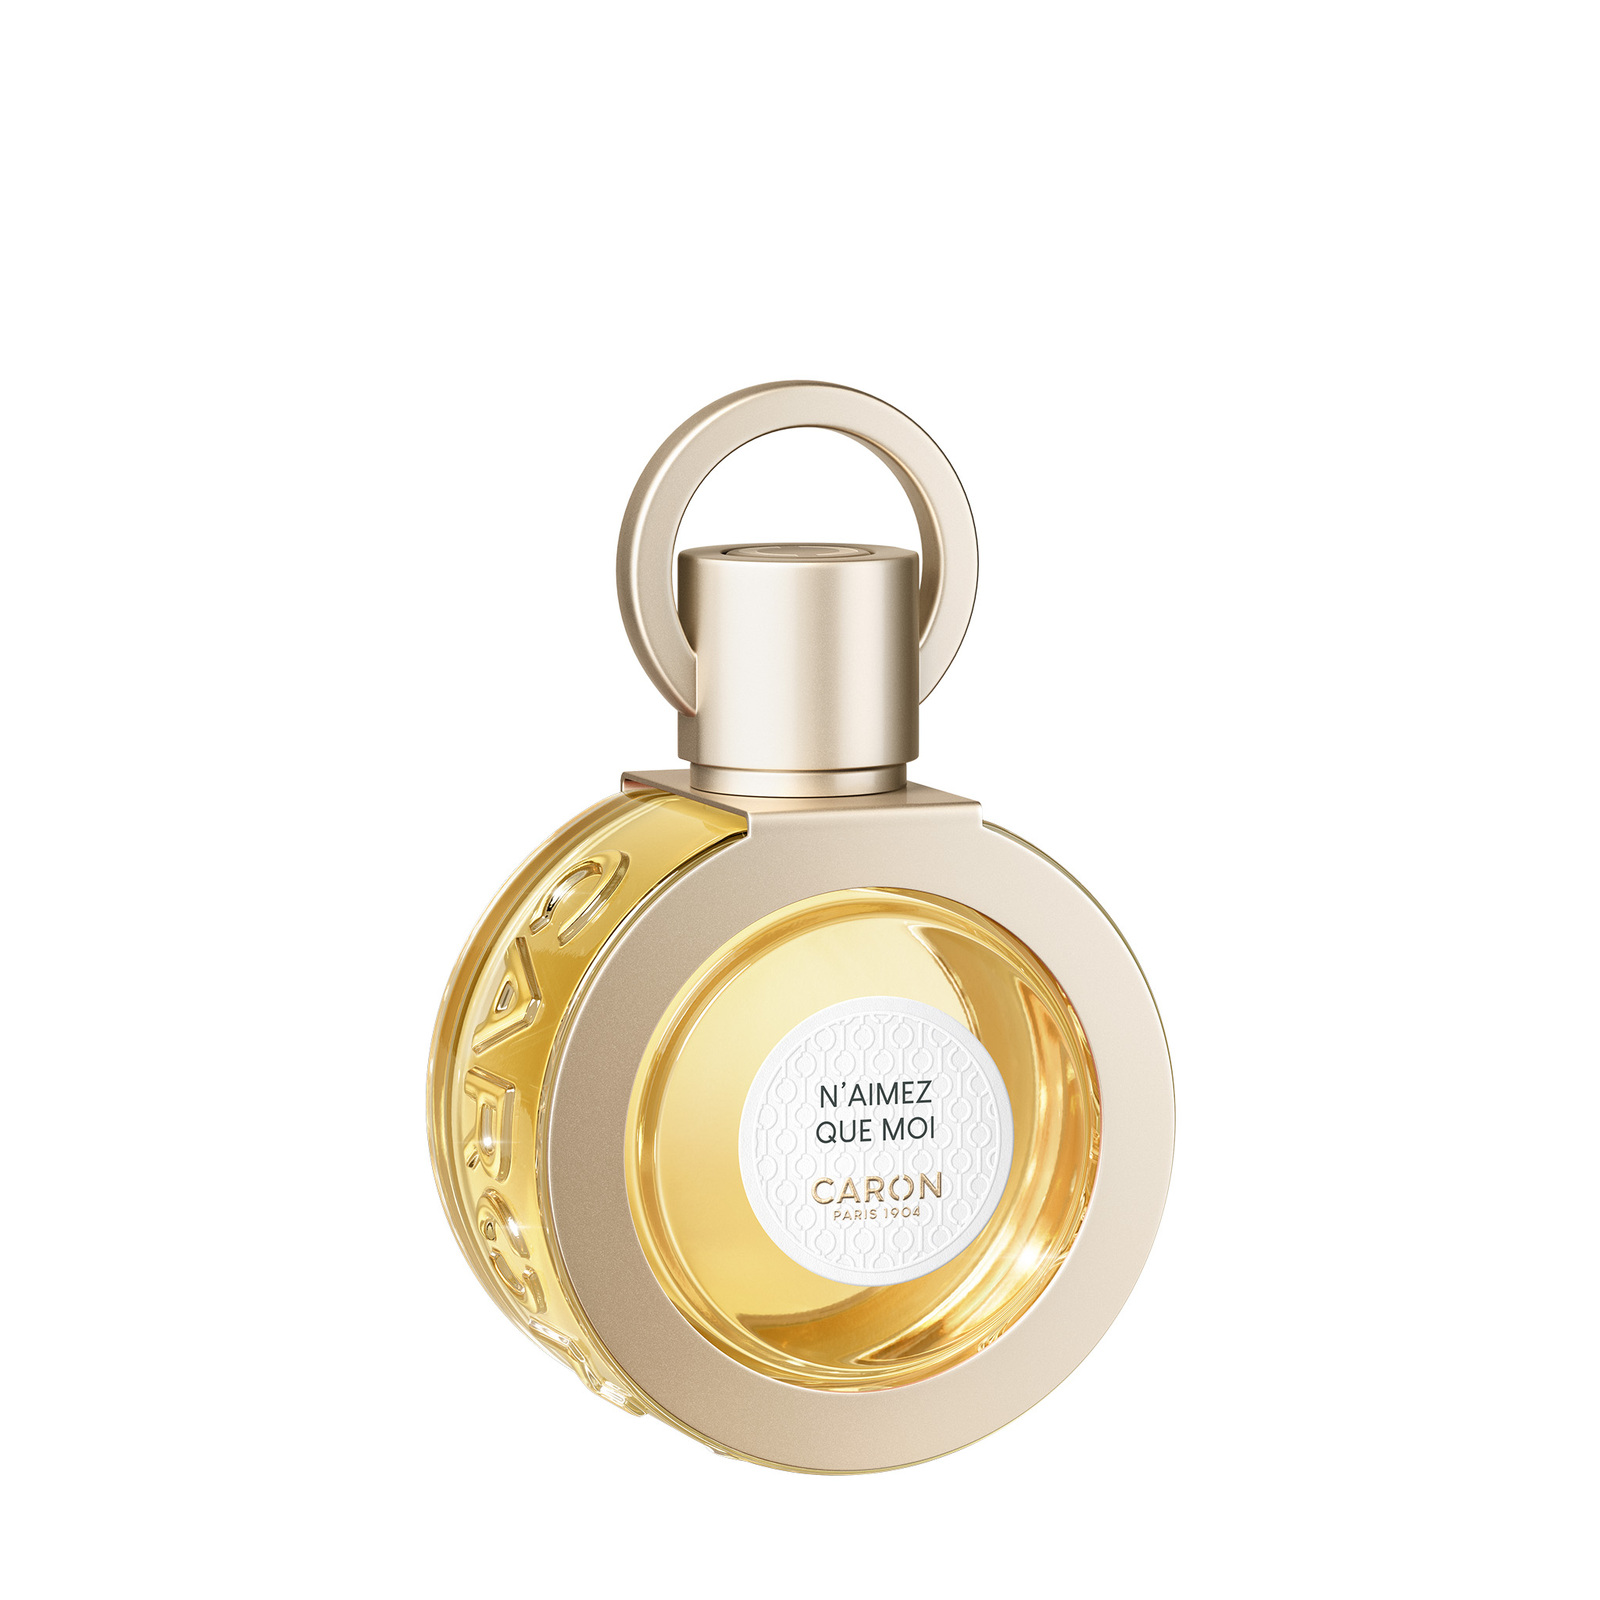 CARON N'Aimez Que Moi Perfume 50ml Refillable